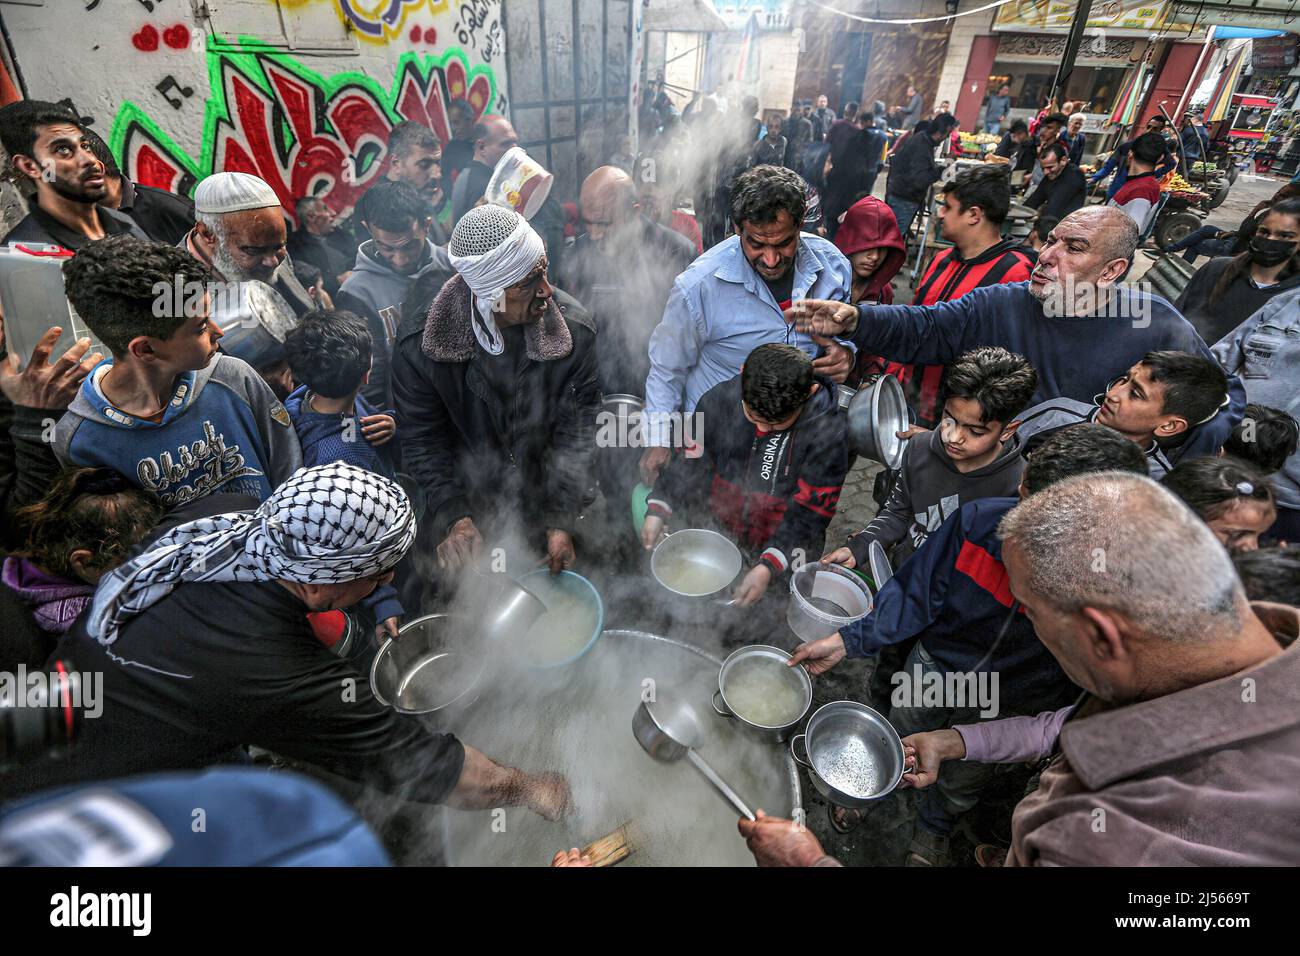 Gaza, Palestine. 20th avril 2022. Les Palestiniens reçoivent de la soupe gratuite pendant le ramadan dans le quartier de Shejaiya, dans la ville de Gaza. Les musulmans du monde entier célèbrent le Saint mois du Ramadan en priant pendant la nuit et en s'abstenant de manger et de boire entre le lever et le coucher du soleil. Ramadan est le neuvième mois du calendrier islamique et on croit que le premier verset du Coran a été révélé au cours de ses dix dernières nuits. (Credit image: © Yousef Masoud/SOPA Images via ZUMA Press Wire) Banque D'Images